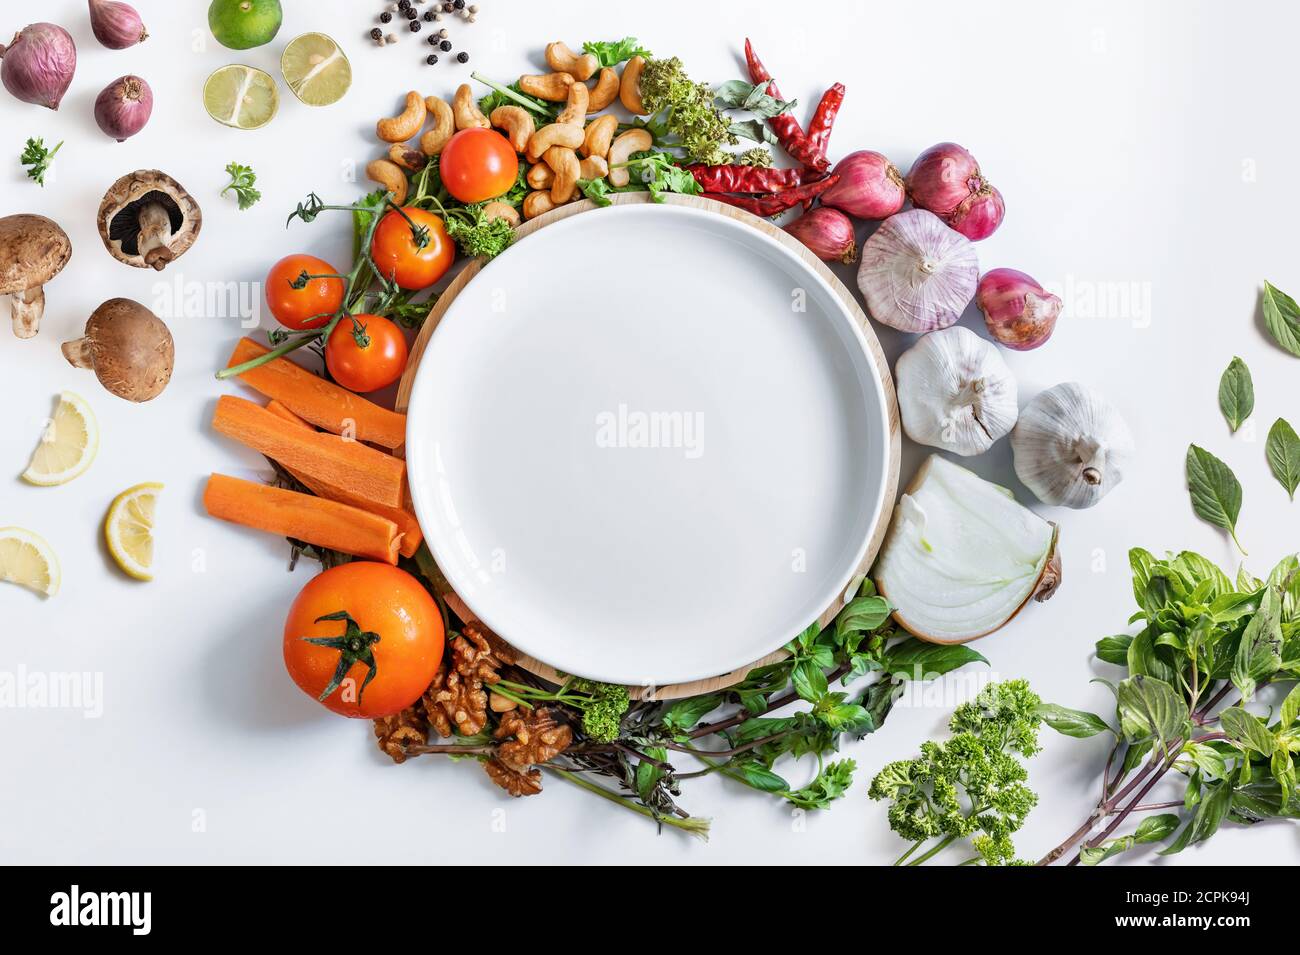 Manger sainement. Plat en céramique blanche entouré de légumes frais sains, sur fond blanc Banque D'Images